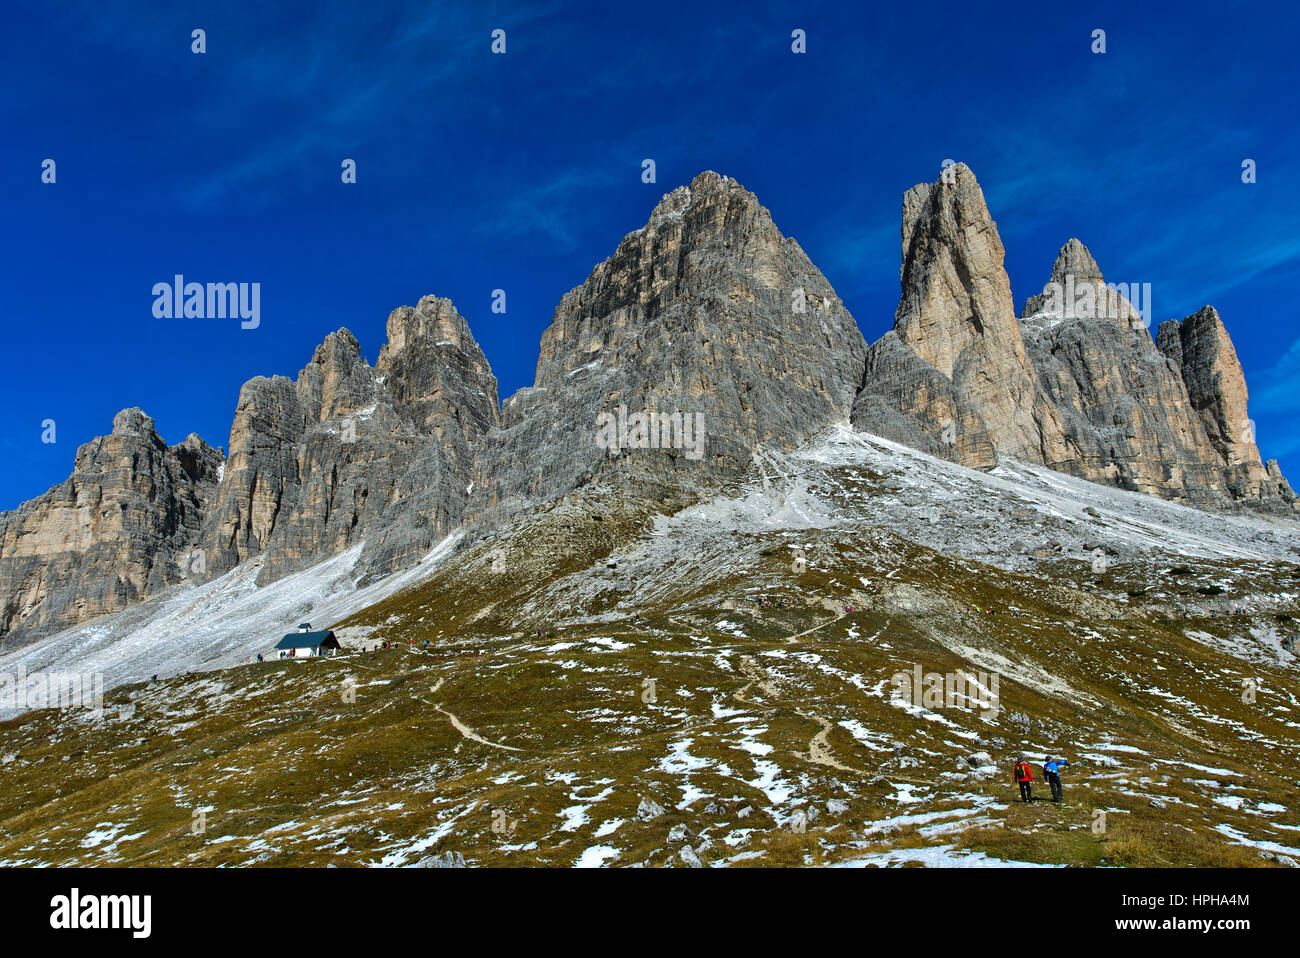 Fronte sud delle Tre Cime montagne, le Tre Cime di Lavaredo, Drei Zinnen, Sesto Dolomiti Alto Adige, Trentino Alto Adige, Italia Foto Stock